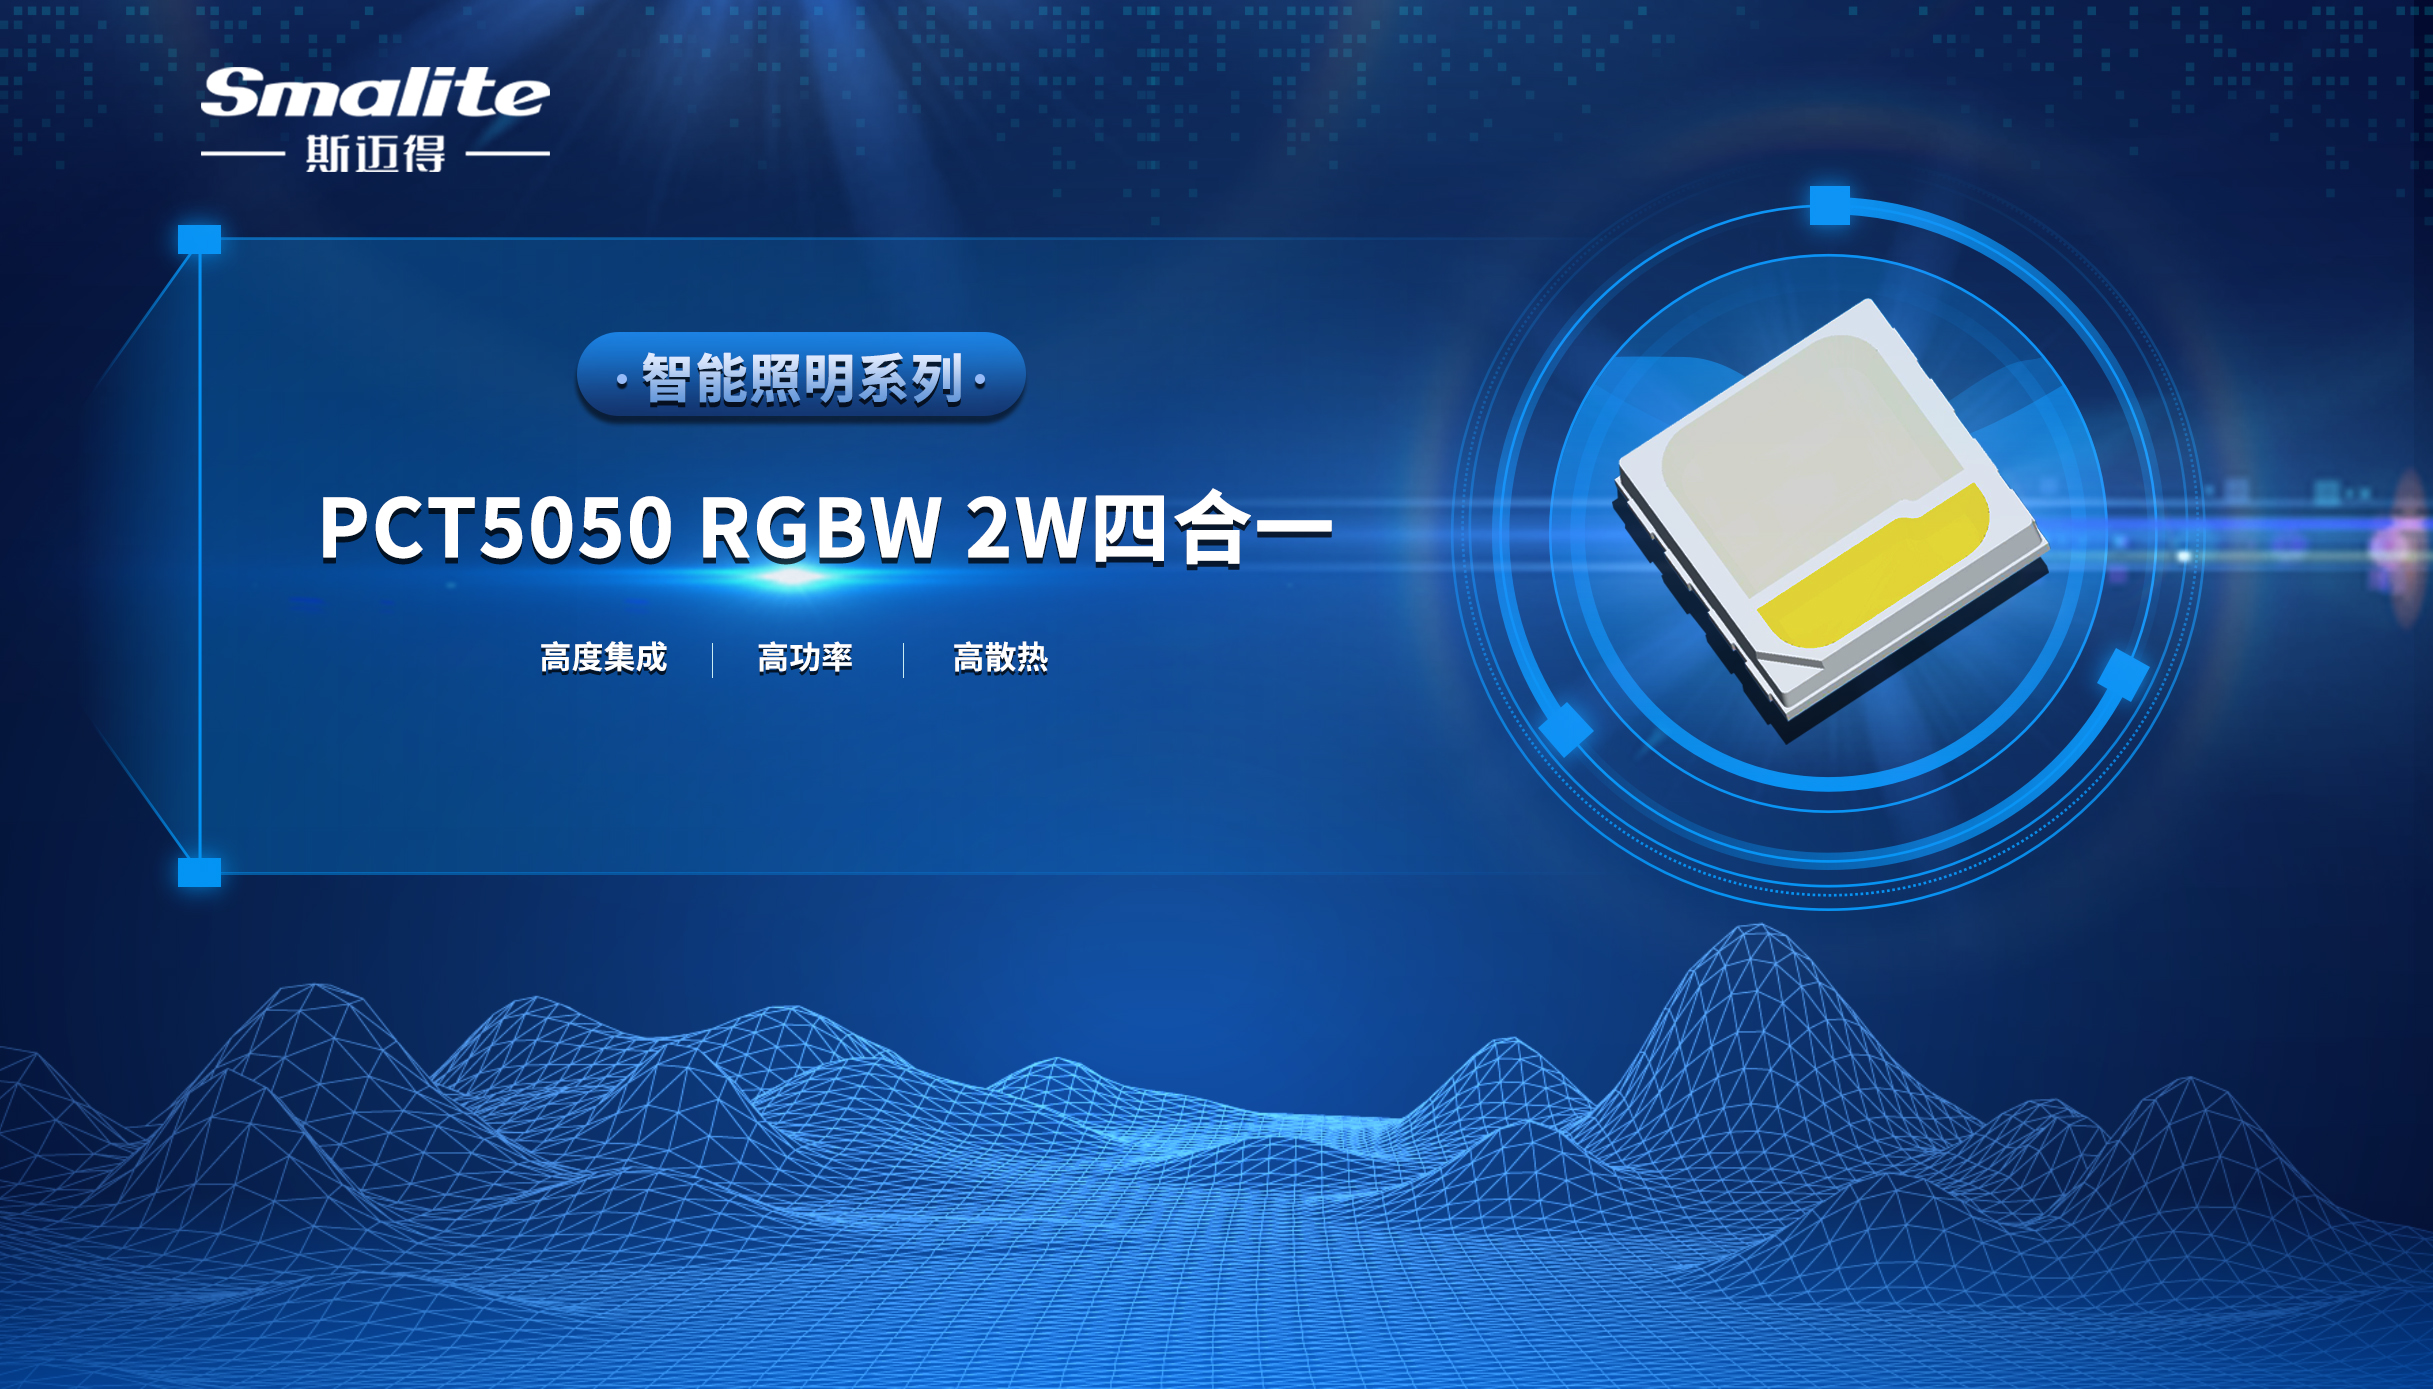 斯邁得推PCT5050 RGBW 2W四合一智能照明系列產品